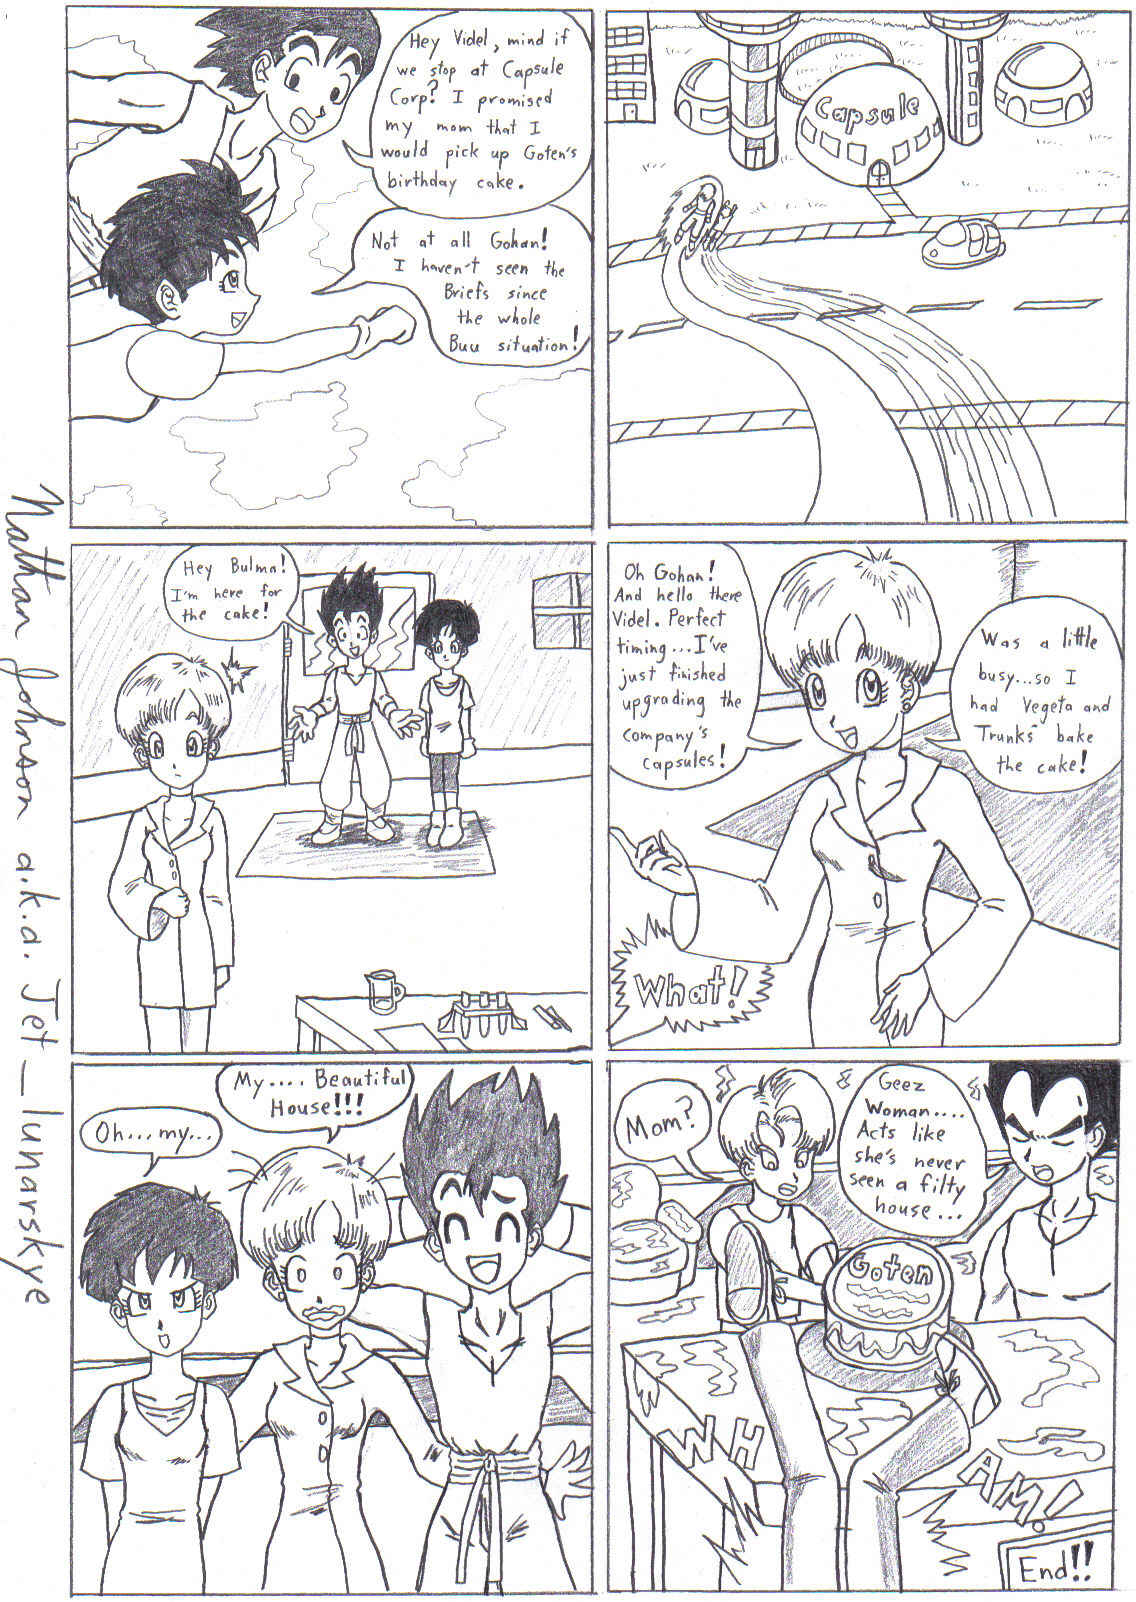 A DBZ Mini-Manga: Birthday Bust!! by Jet_lunarskye